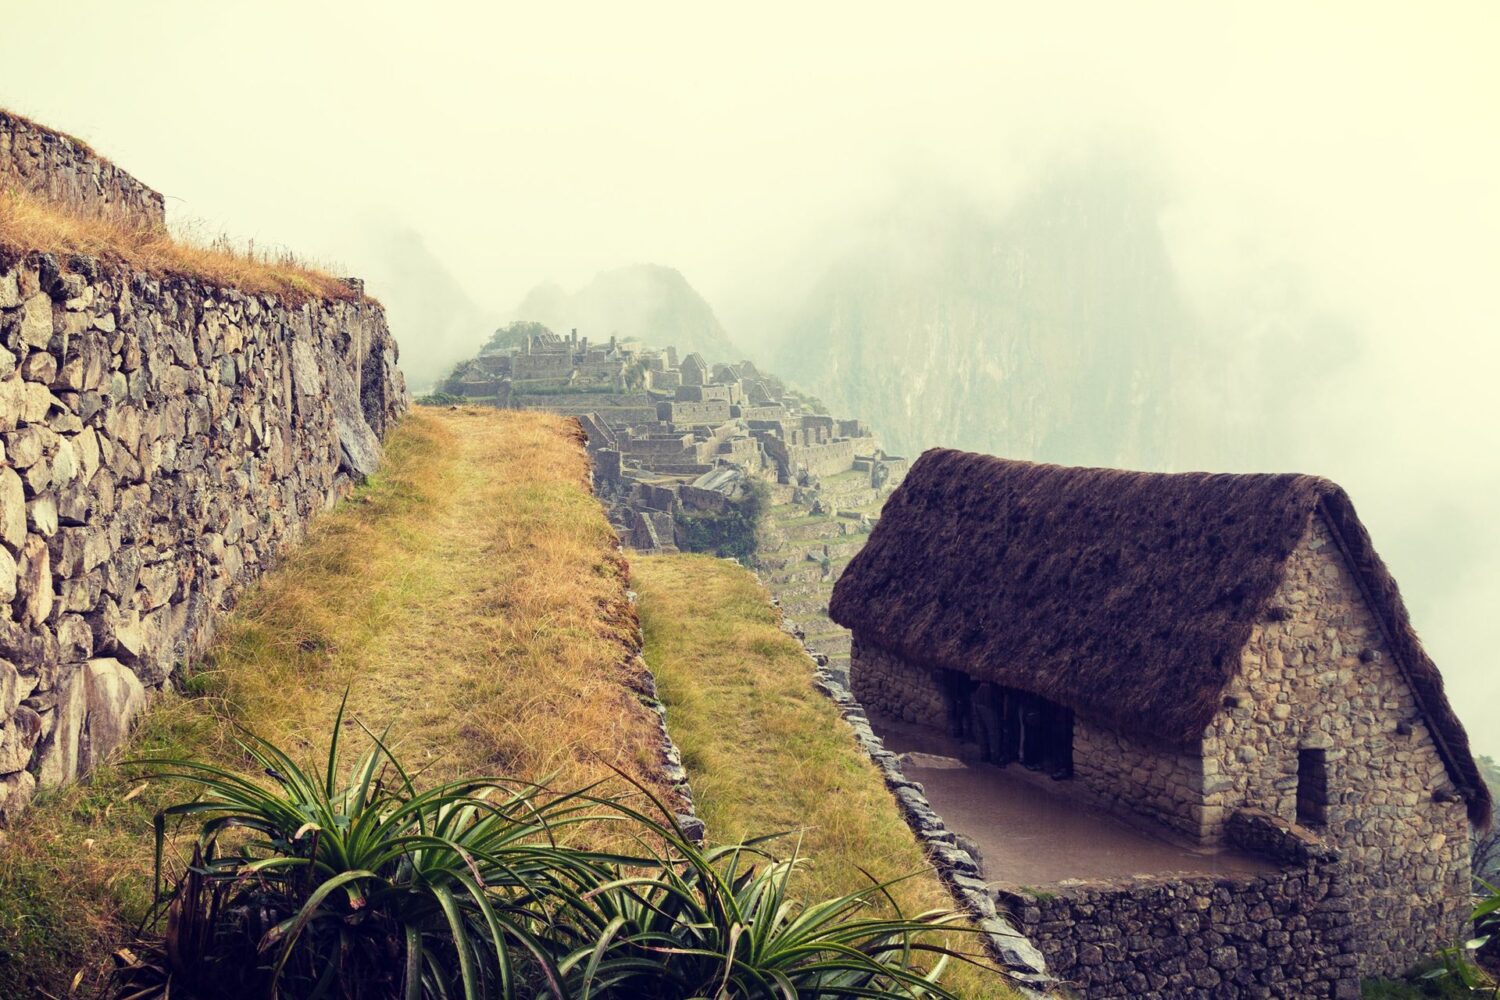 Machu Picchu Huayna Picchu Tour